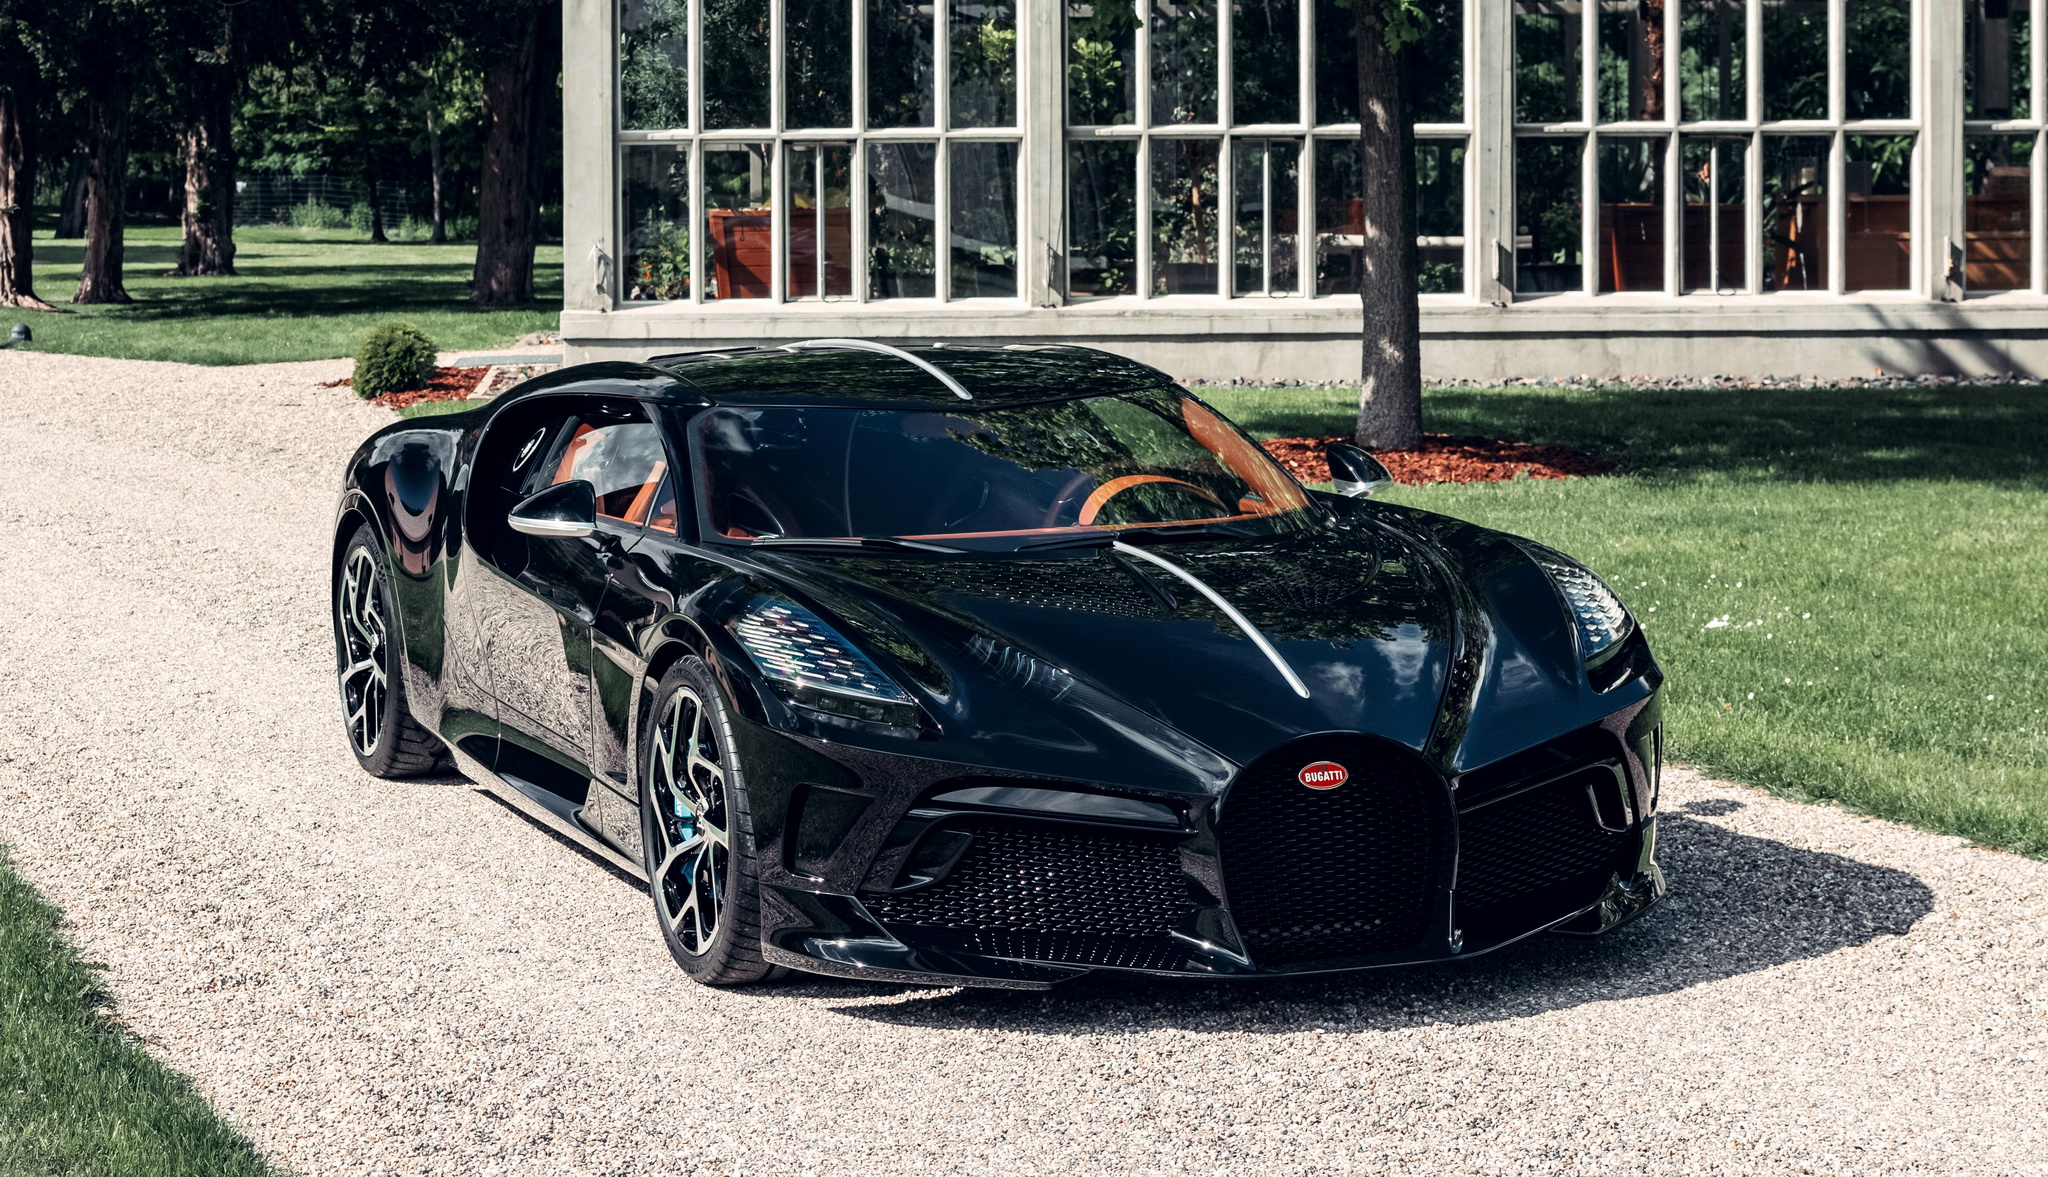 ยลโฉม! Bugatti La Voiture Noire คันเดียวในโลก พร้อมส่งถึงมือเจ้าของแล้ว...